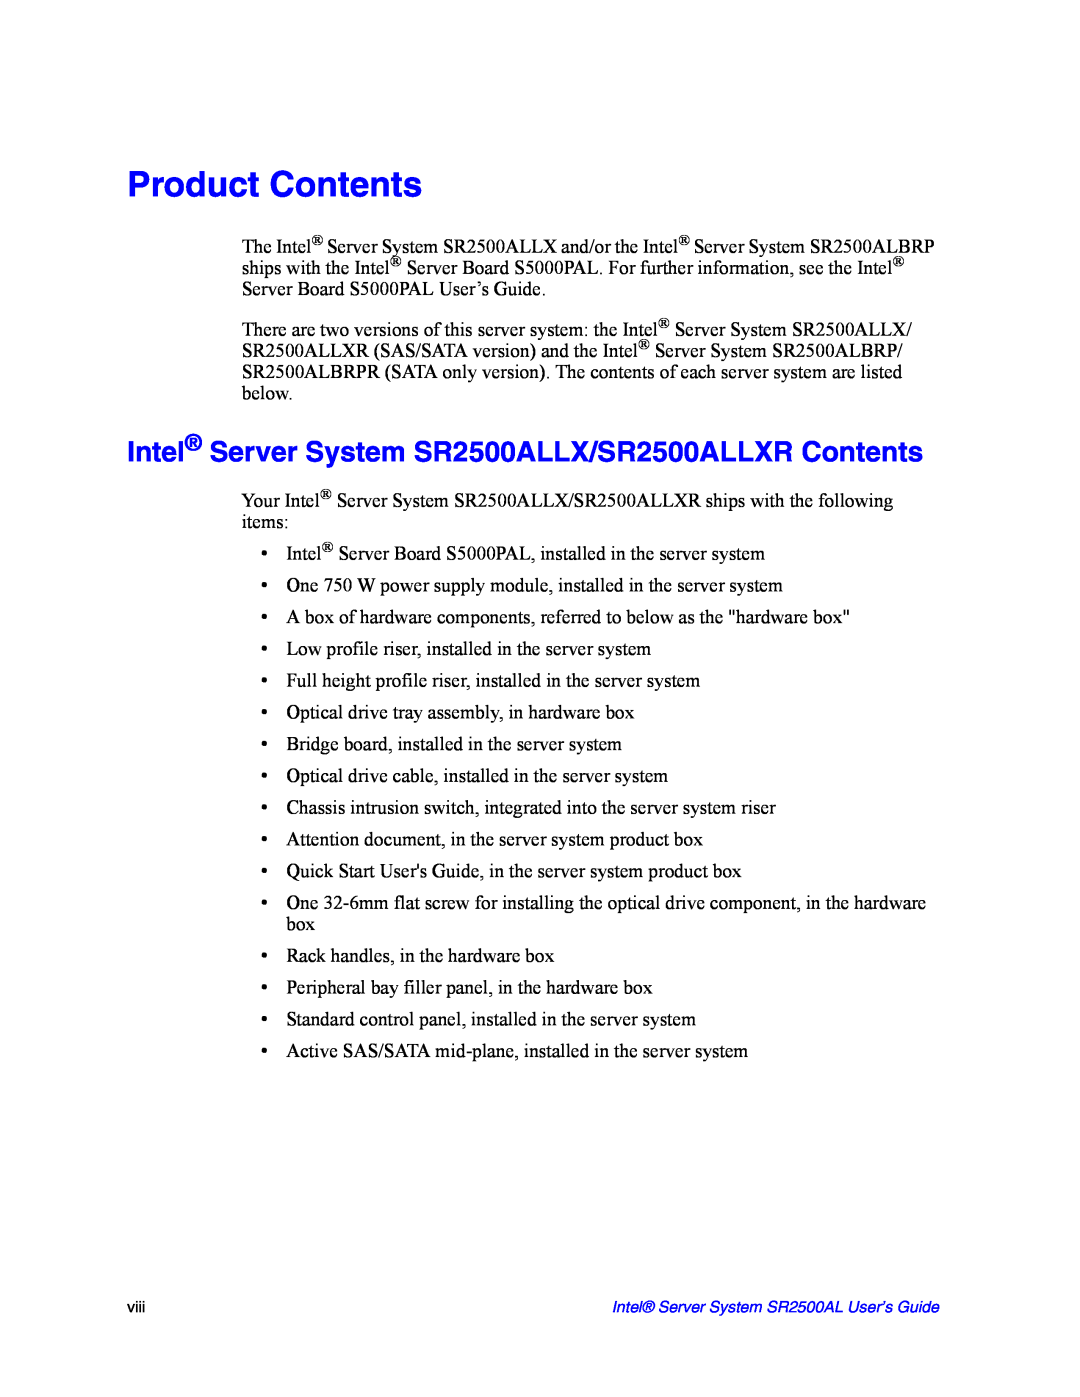 Intel manual Product Contents, Intel Server System SR2500ALLX/SR2500ALLXR Contents 